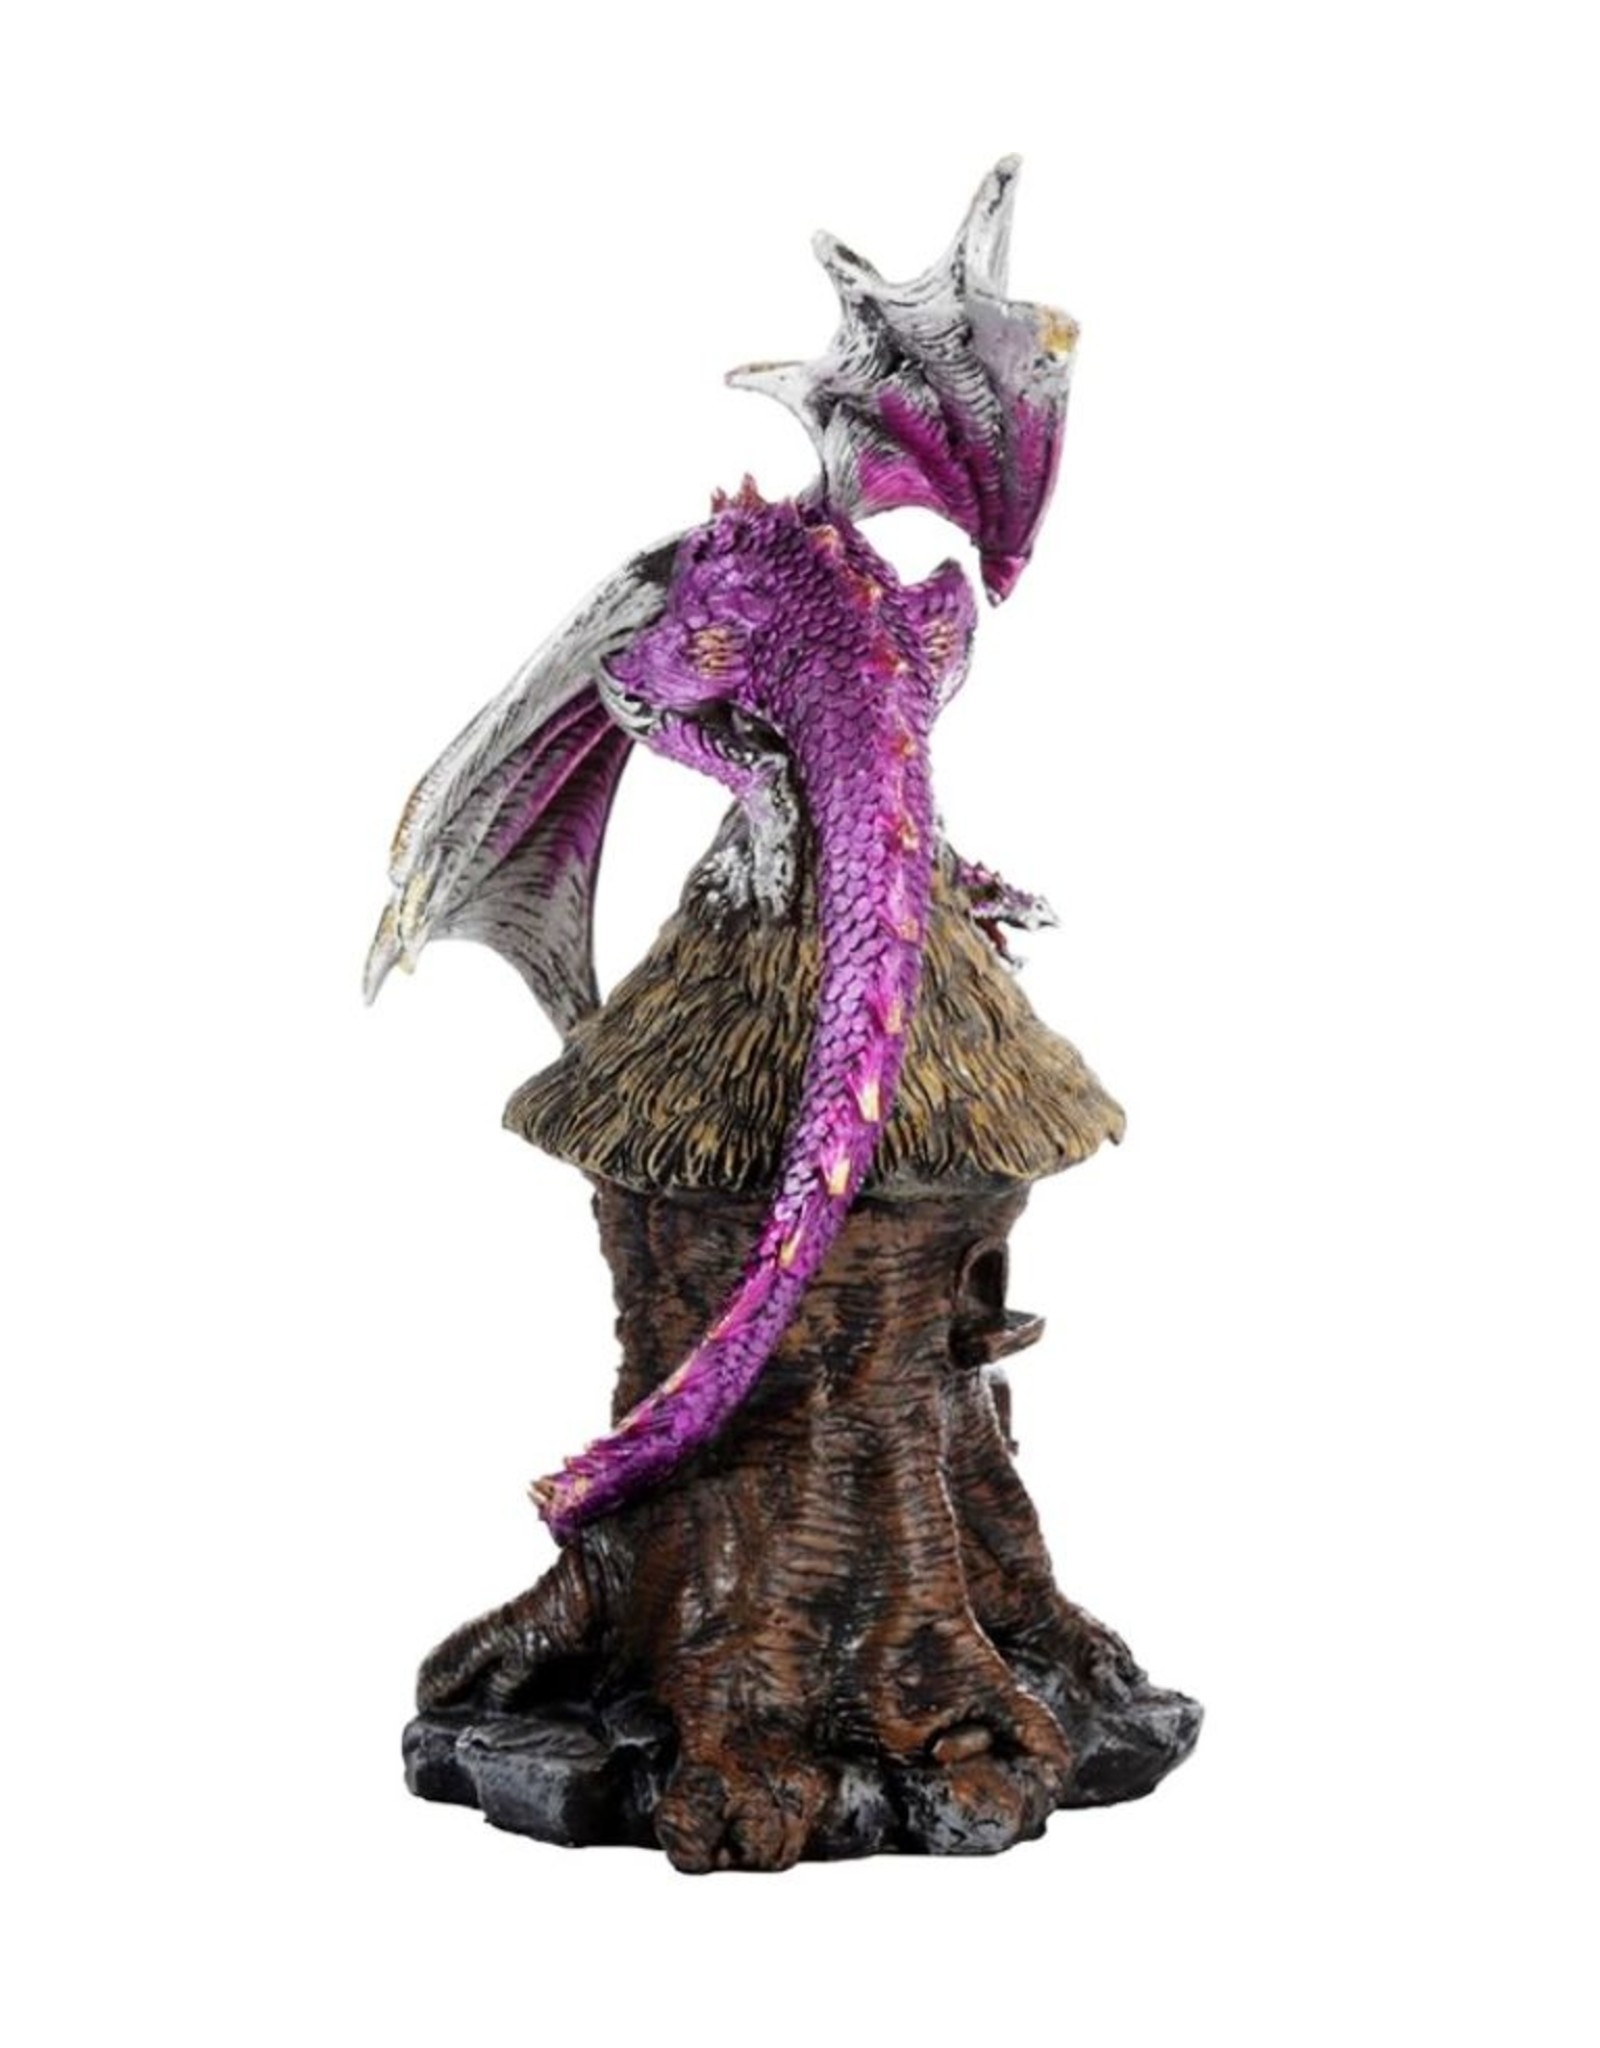 Duistere legenden Giftware Figurines Collectables - Dark Legends Forest Spirit Dragon LED